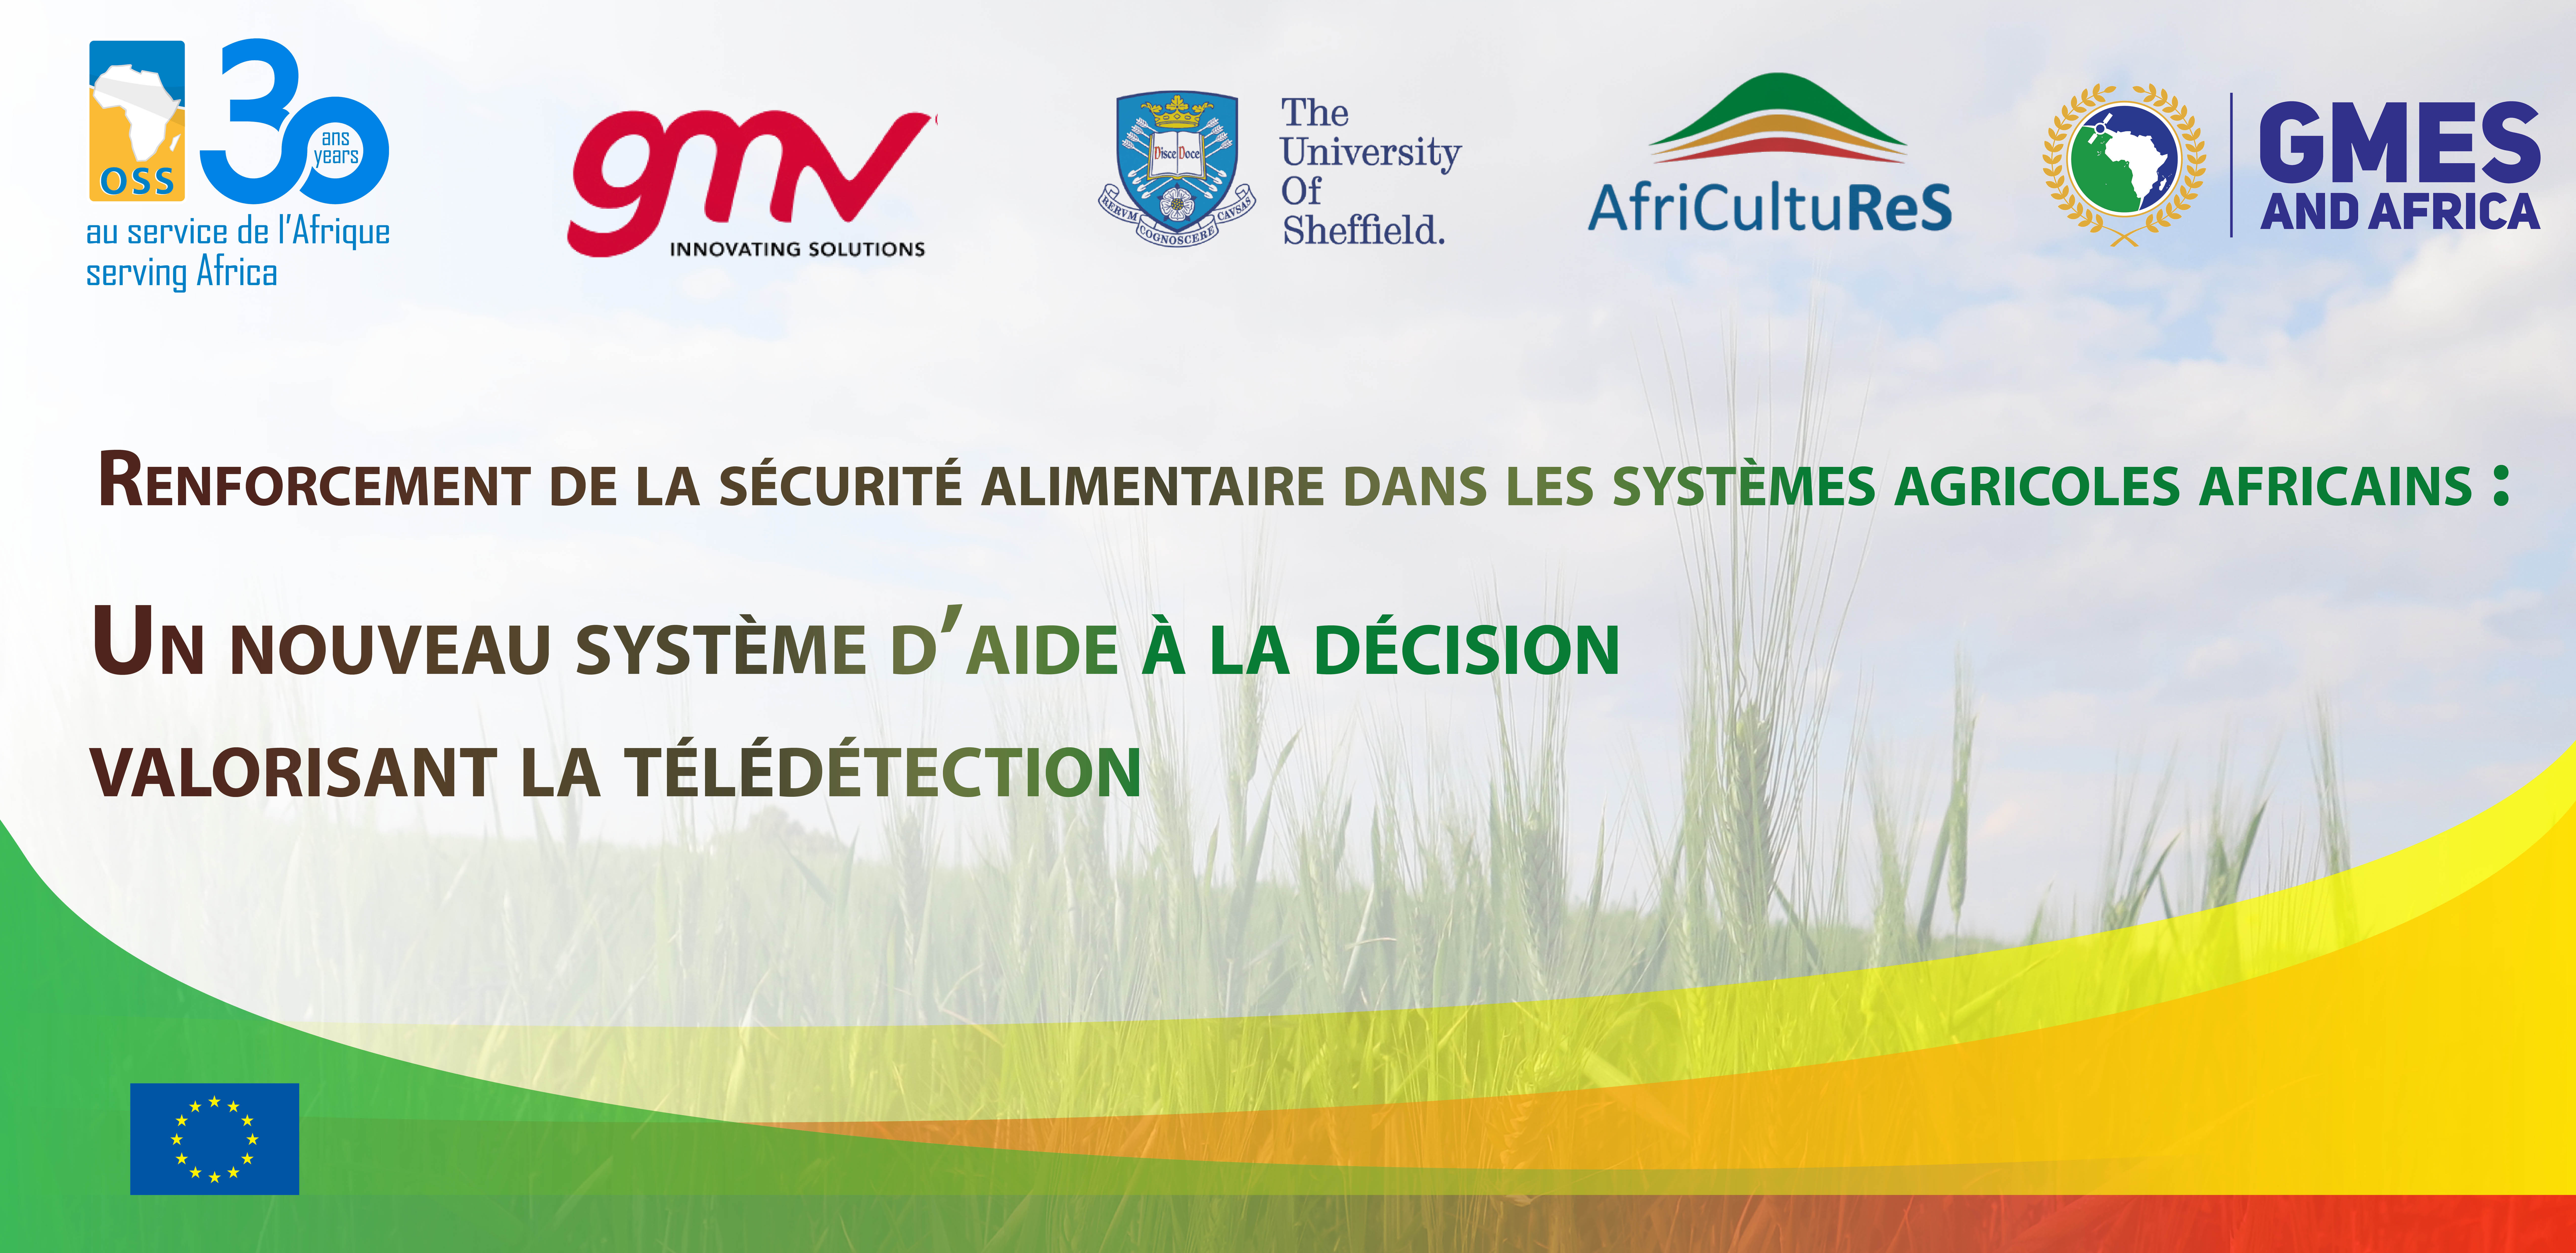  Renforcement de la sécurité alimentaire dans les systèmes agricoles africains : Un nouveau système d'aide à la décision valorisant la télédétection